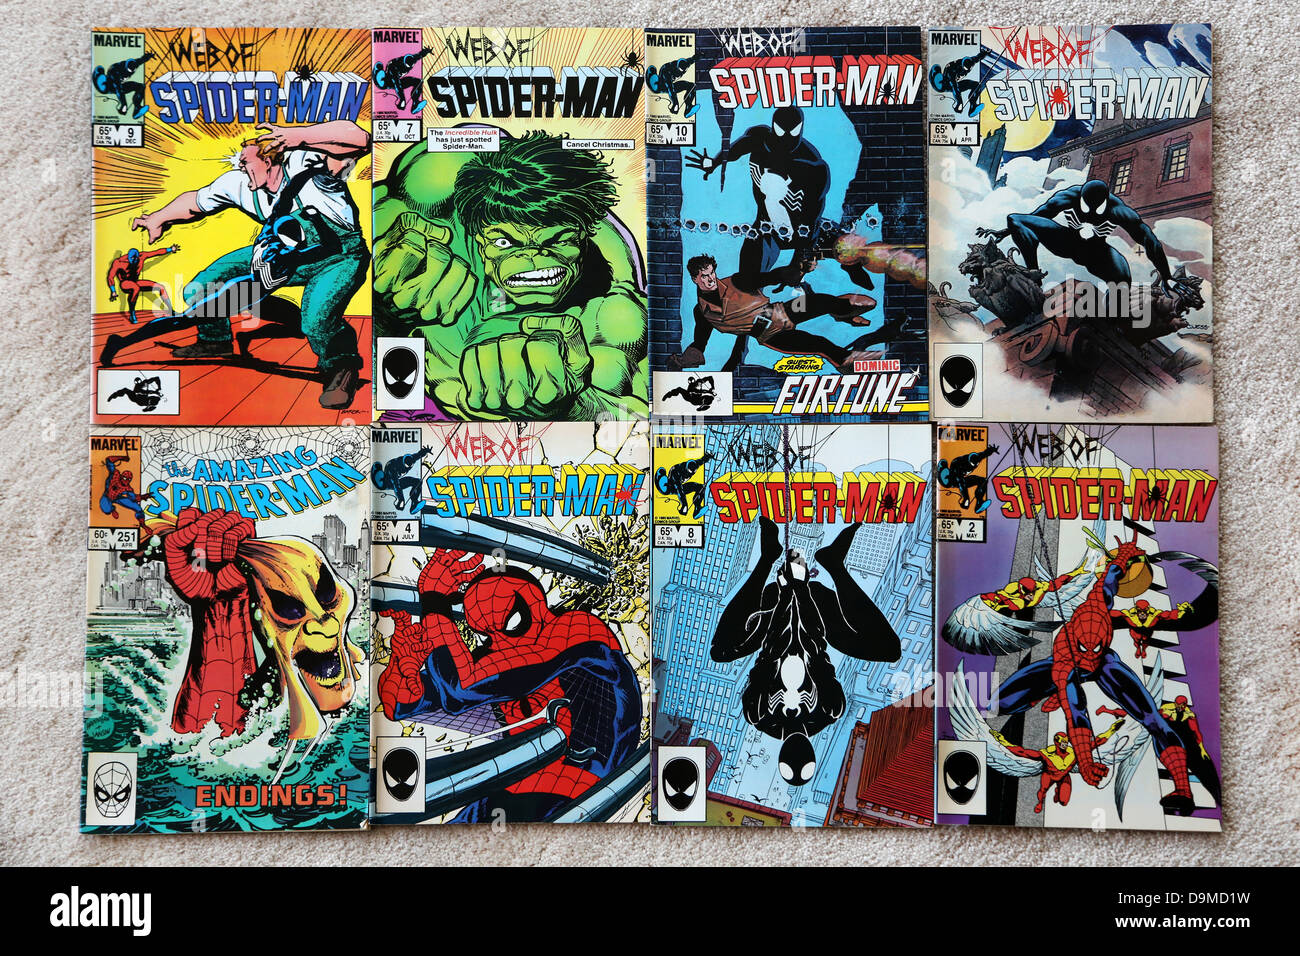 Colección de Marvel Comics en la Web de Spider-man y el asombroso Spider-man Foto de stock